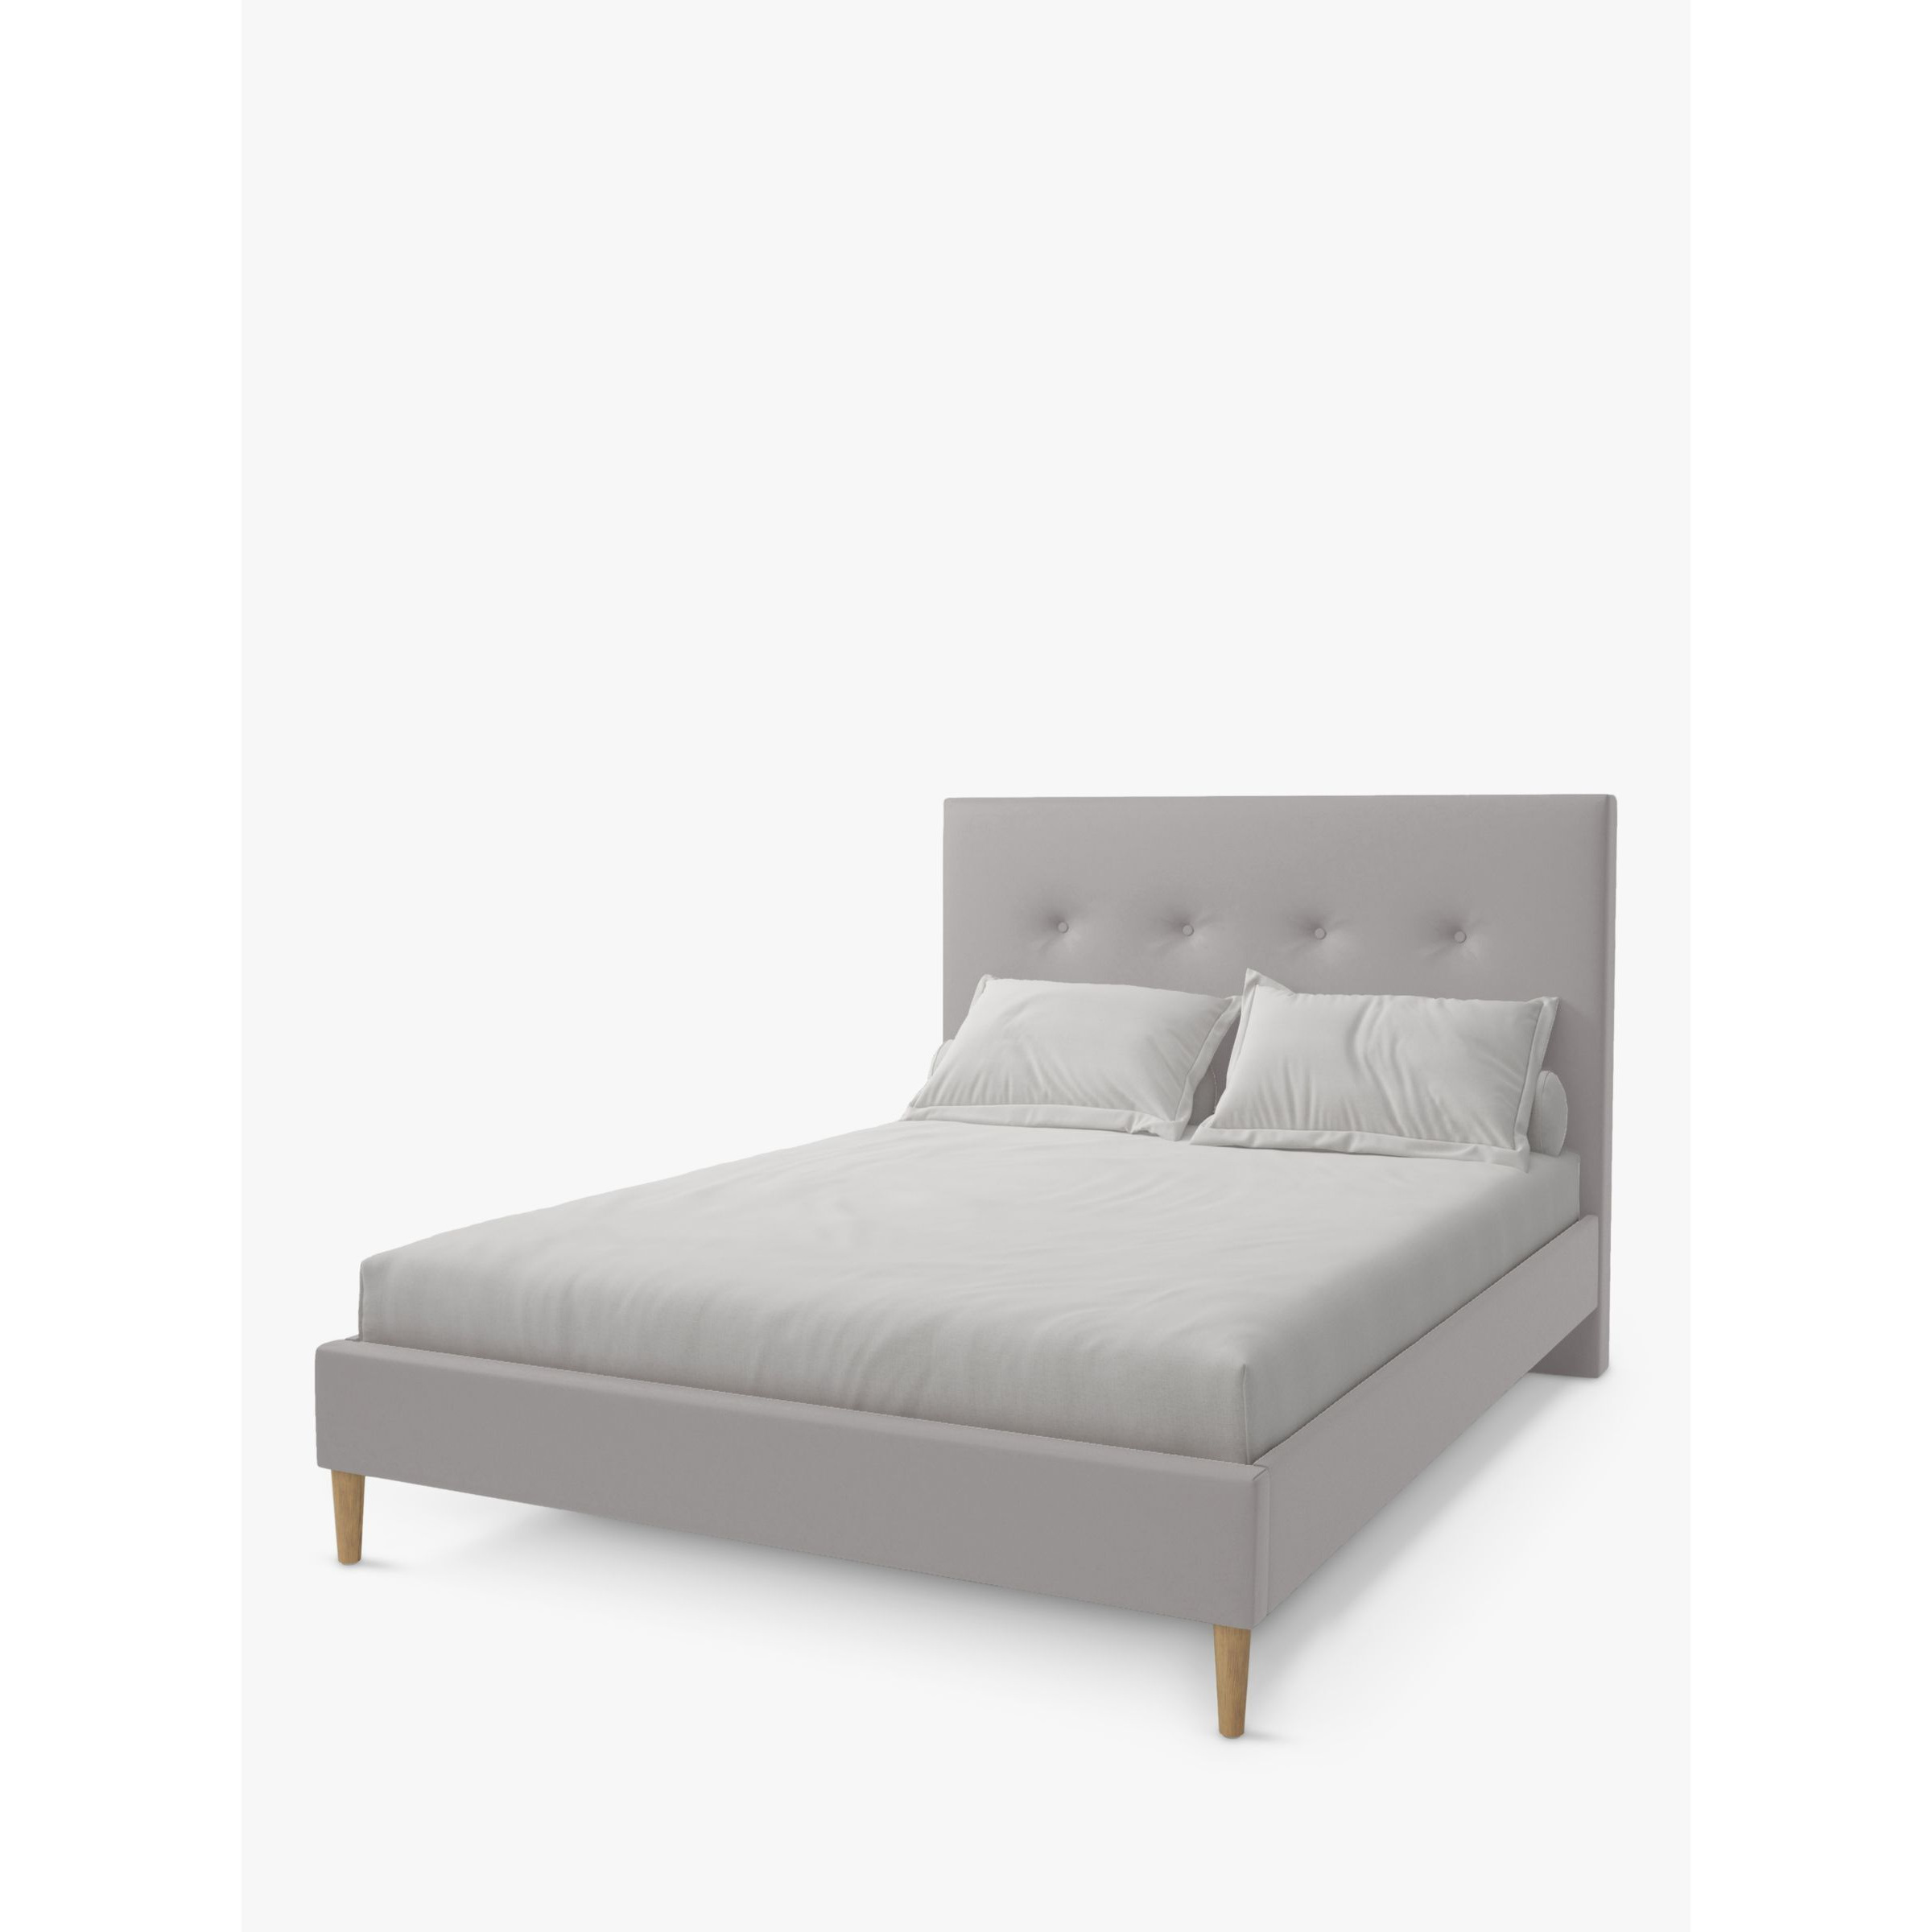 Koti Home Arun Upholstered Bed Frame, Super King Size - image 1